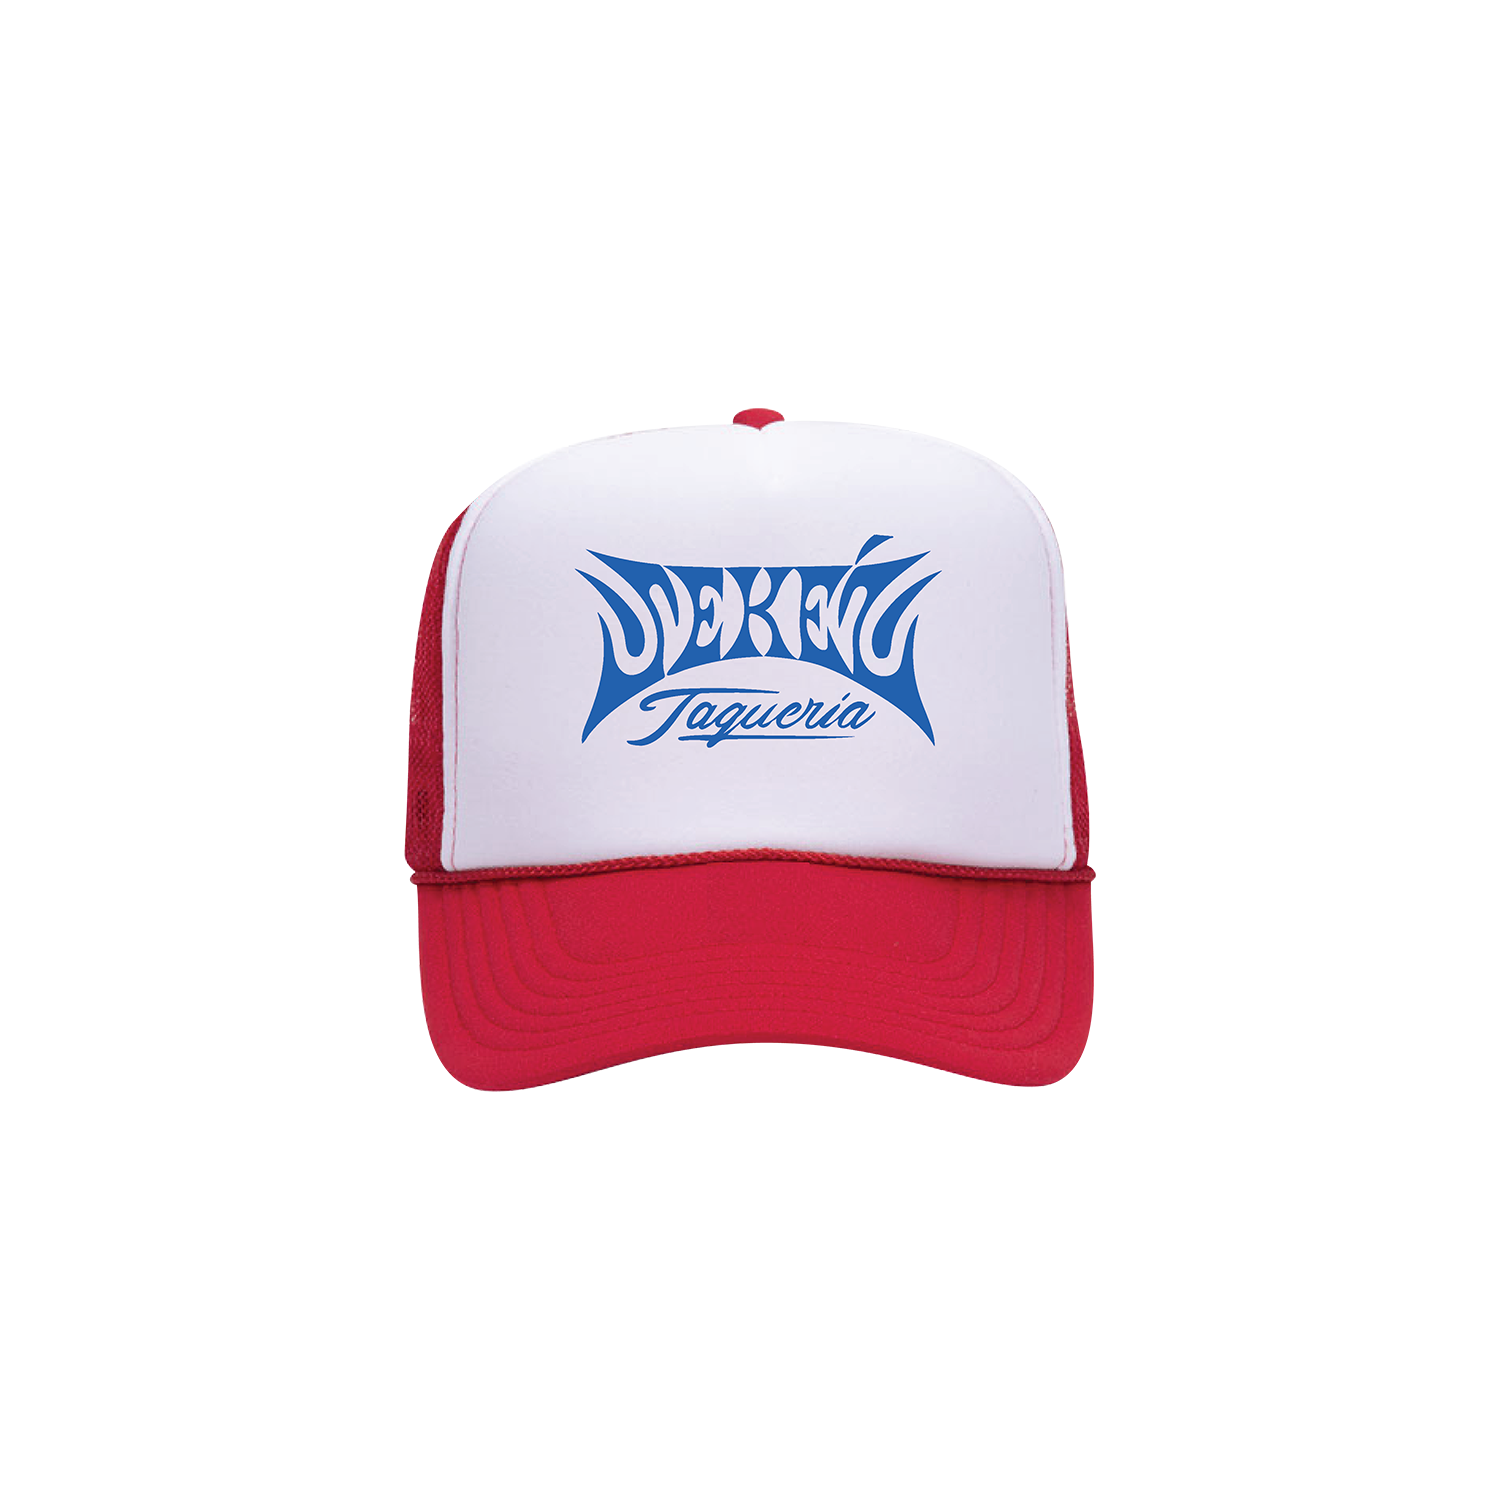 ZEKE TRUCKER HAT | RED